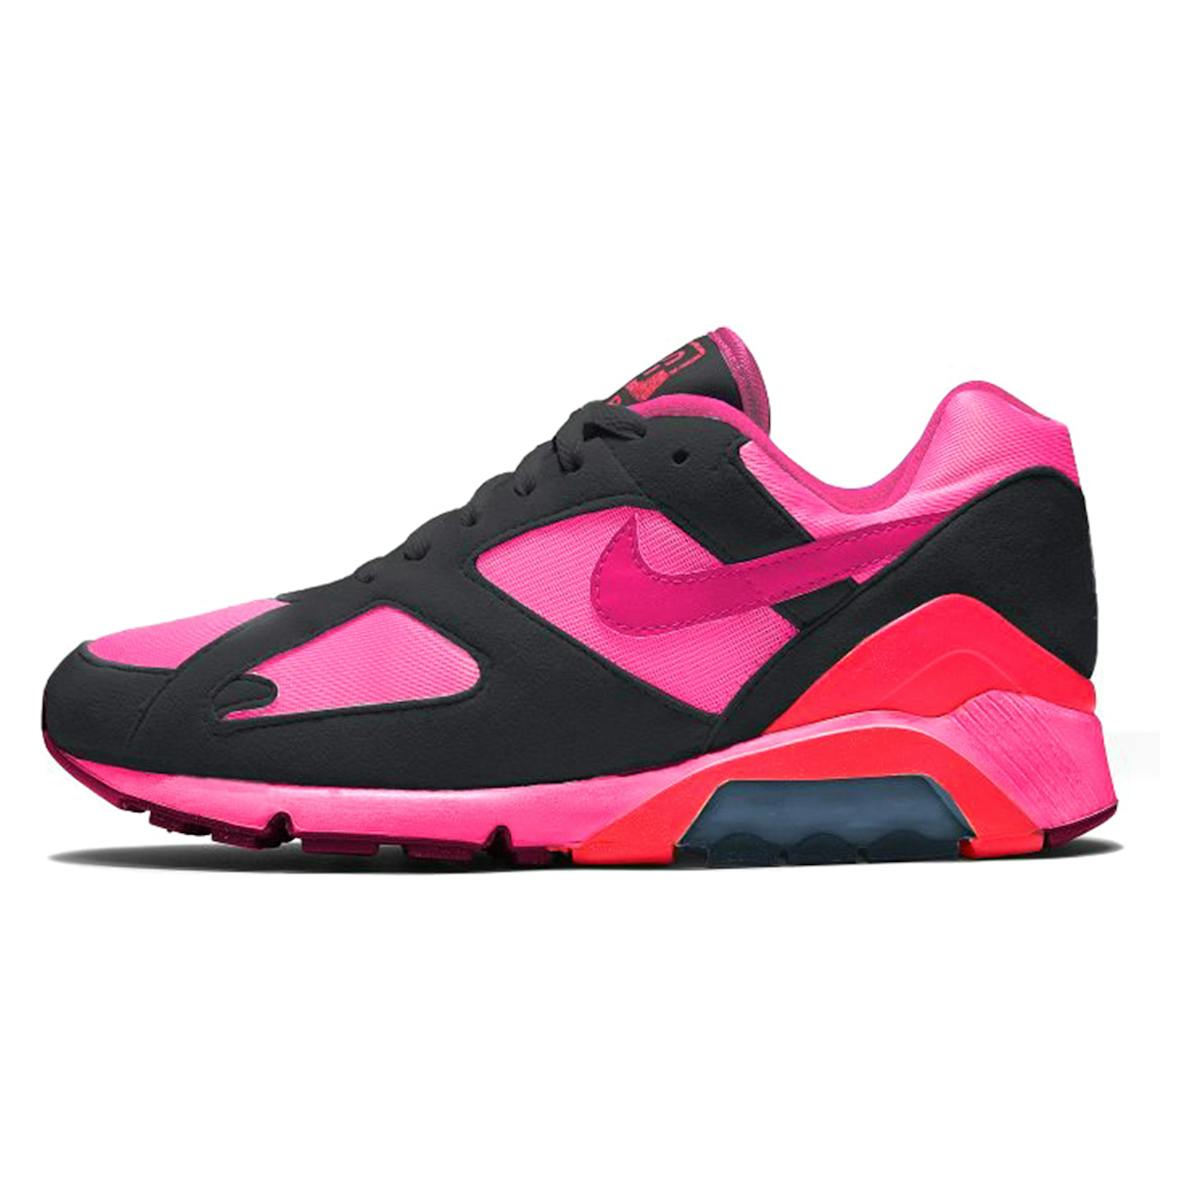 Nike x Comme des Garçons CDG Air Max 180 Black Pink